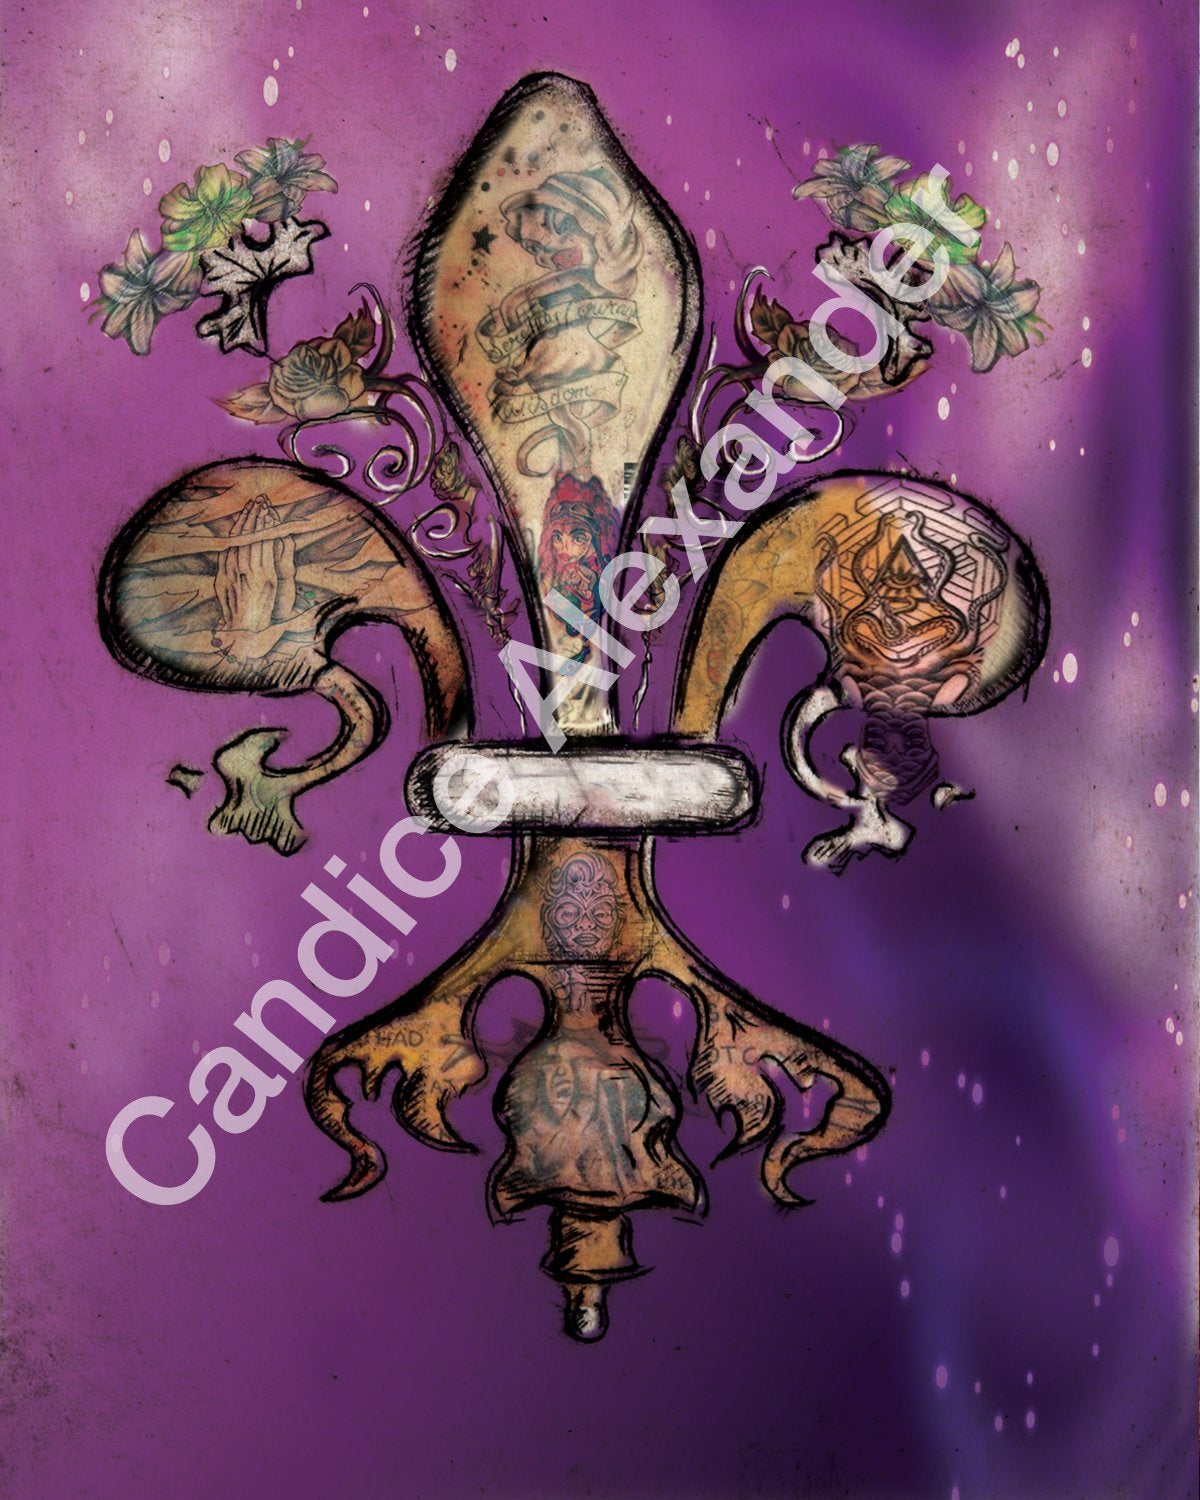 Tattoo Fleur De Lis art by Candice Alexander, Louisiana Artist Fleur De Lis by Candice Alexander Fleur De Lis Artist